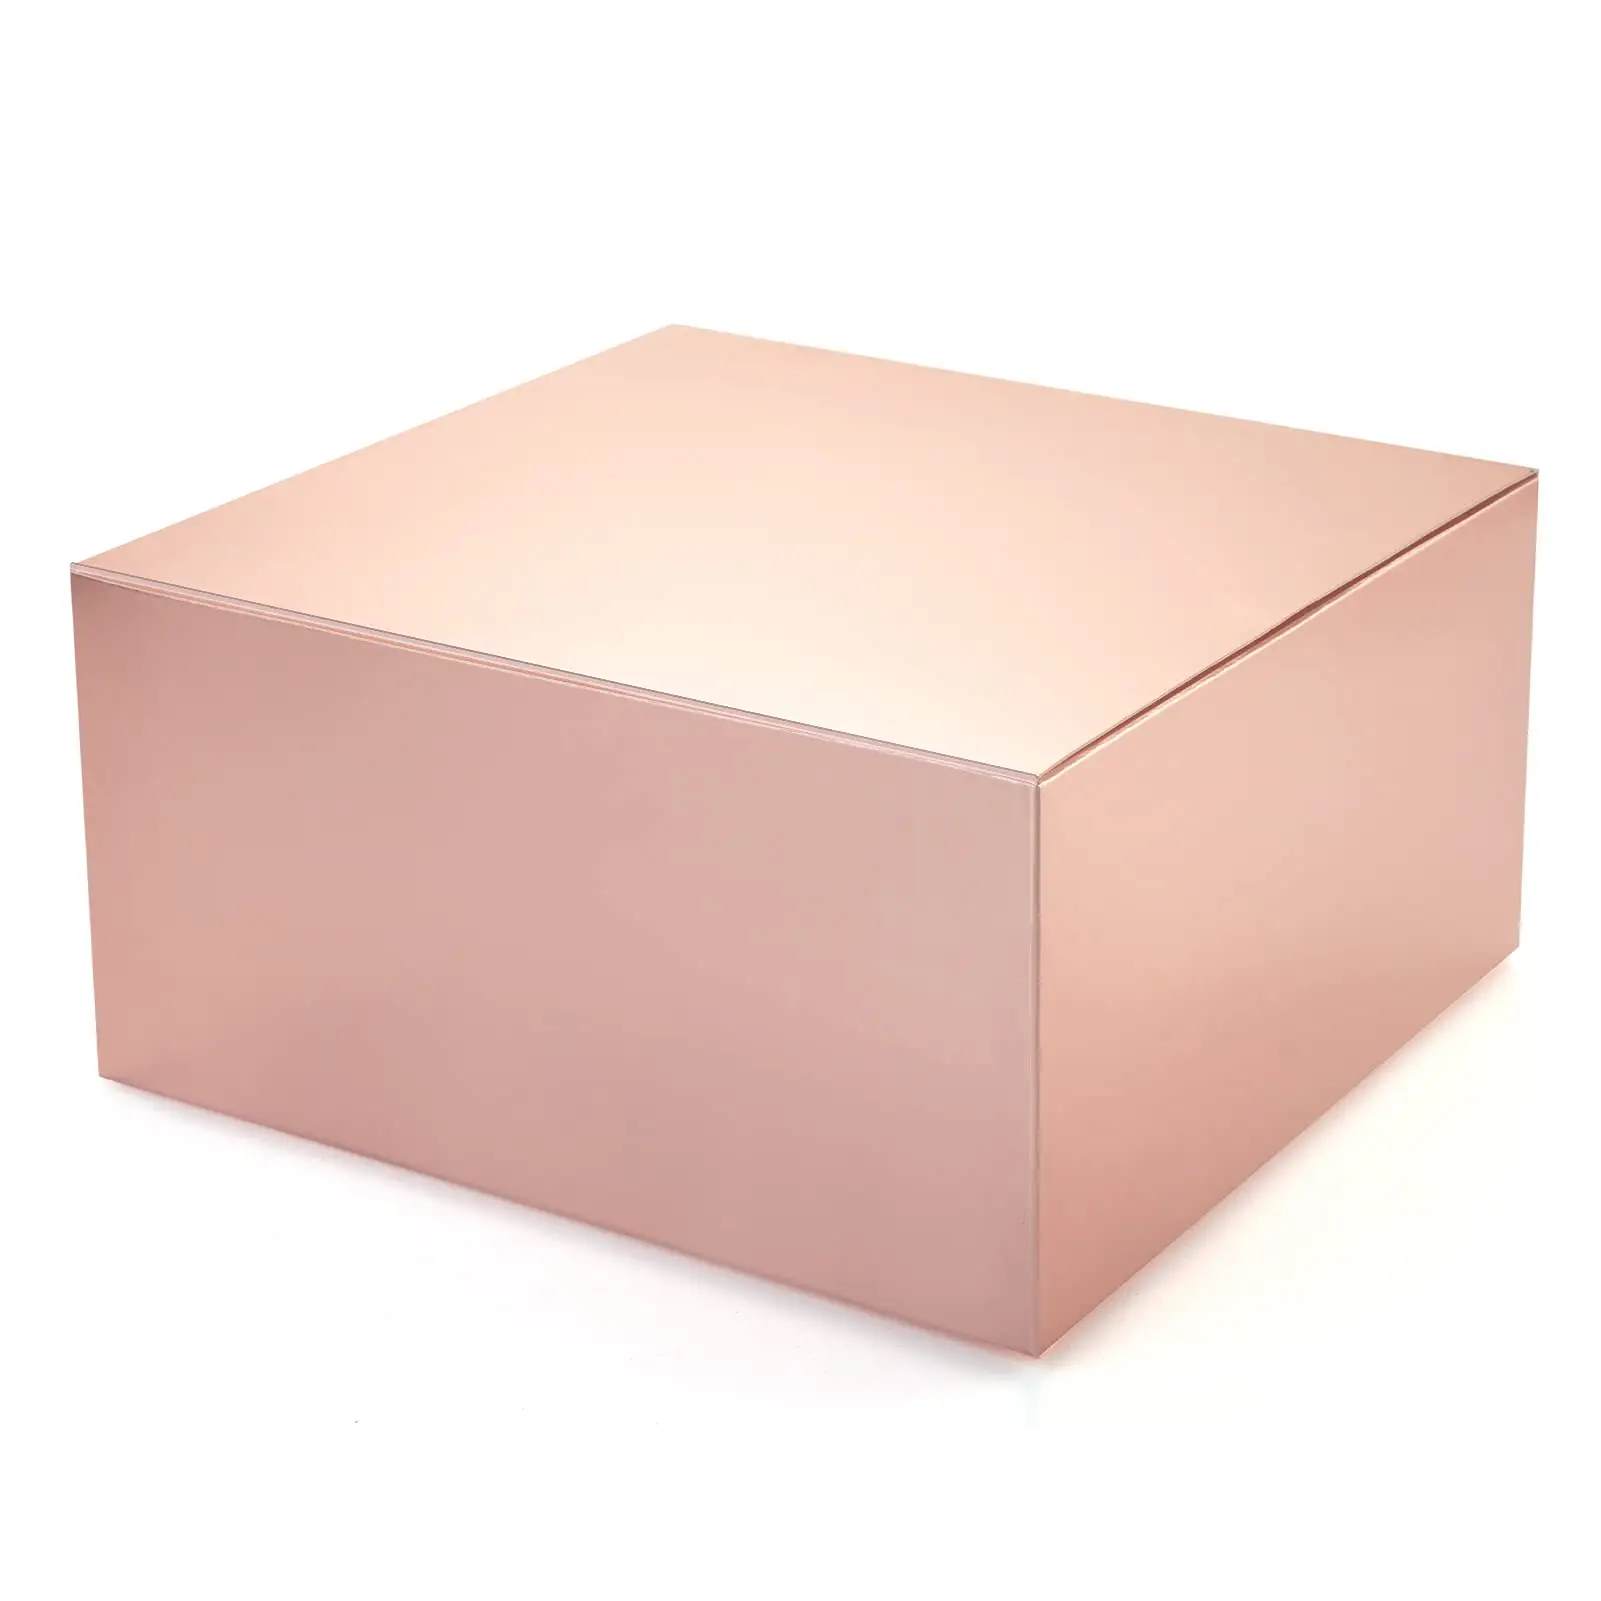 Verkauf von einfachen Design Rose Pink Geschenk boxen Karton Papier Geschenk box mit Deckel